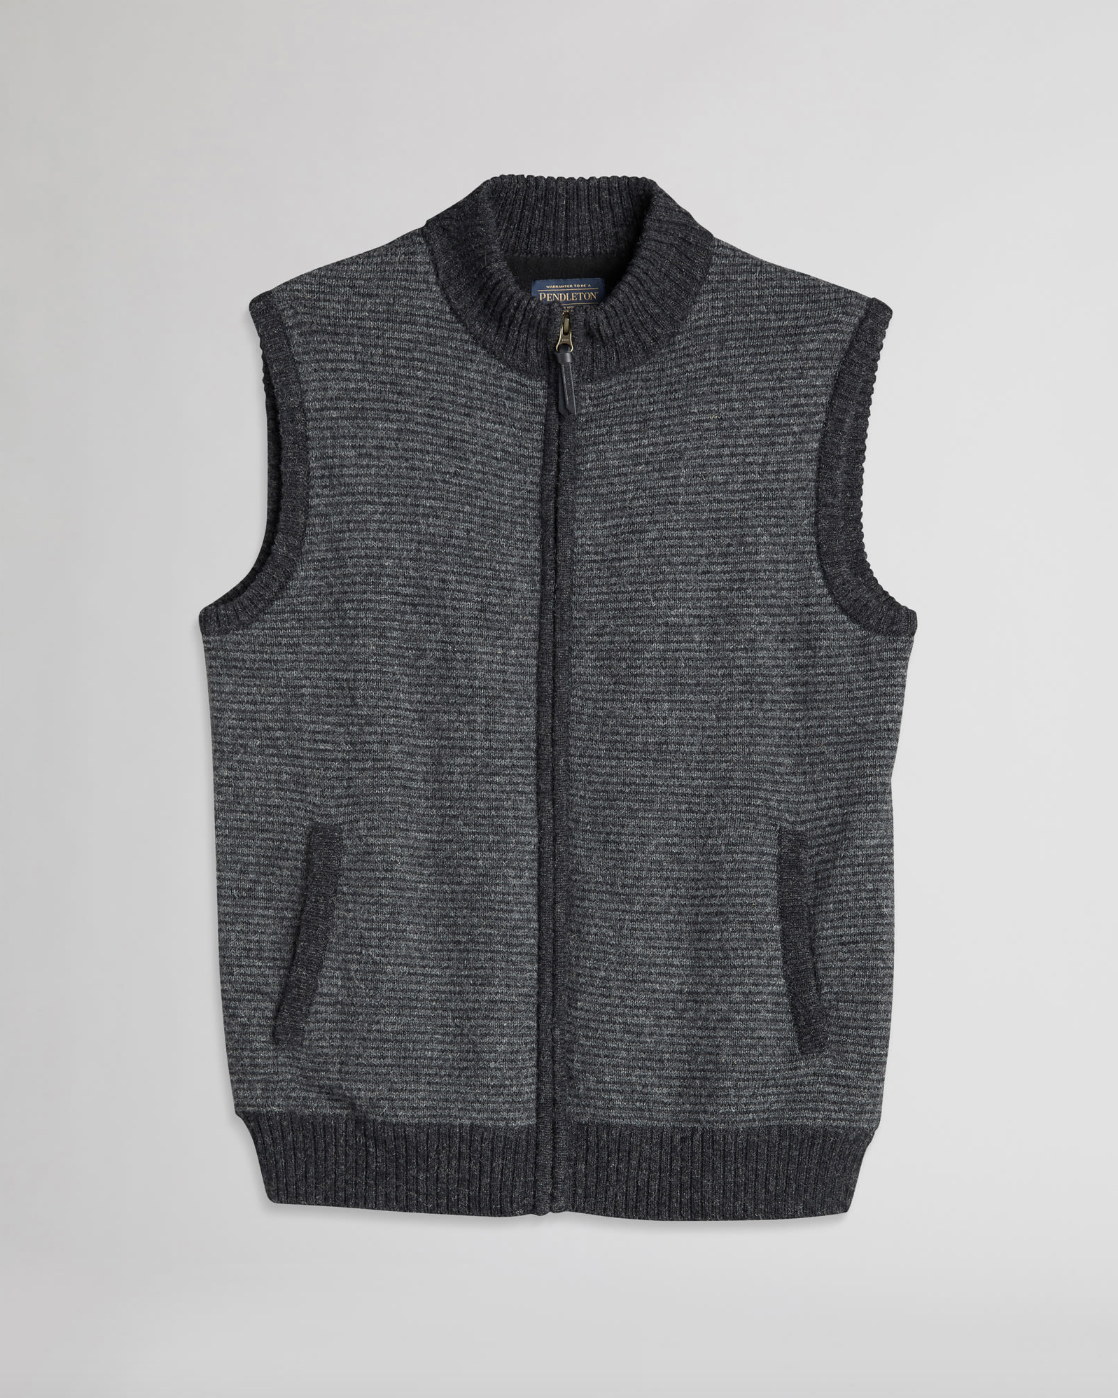 Shetland Sweater Vest<br>Charcoal/Black